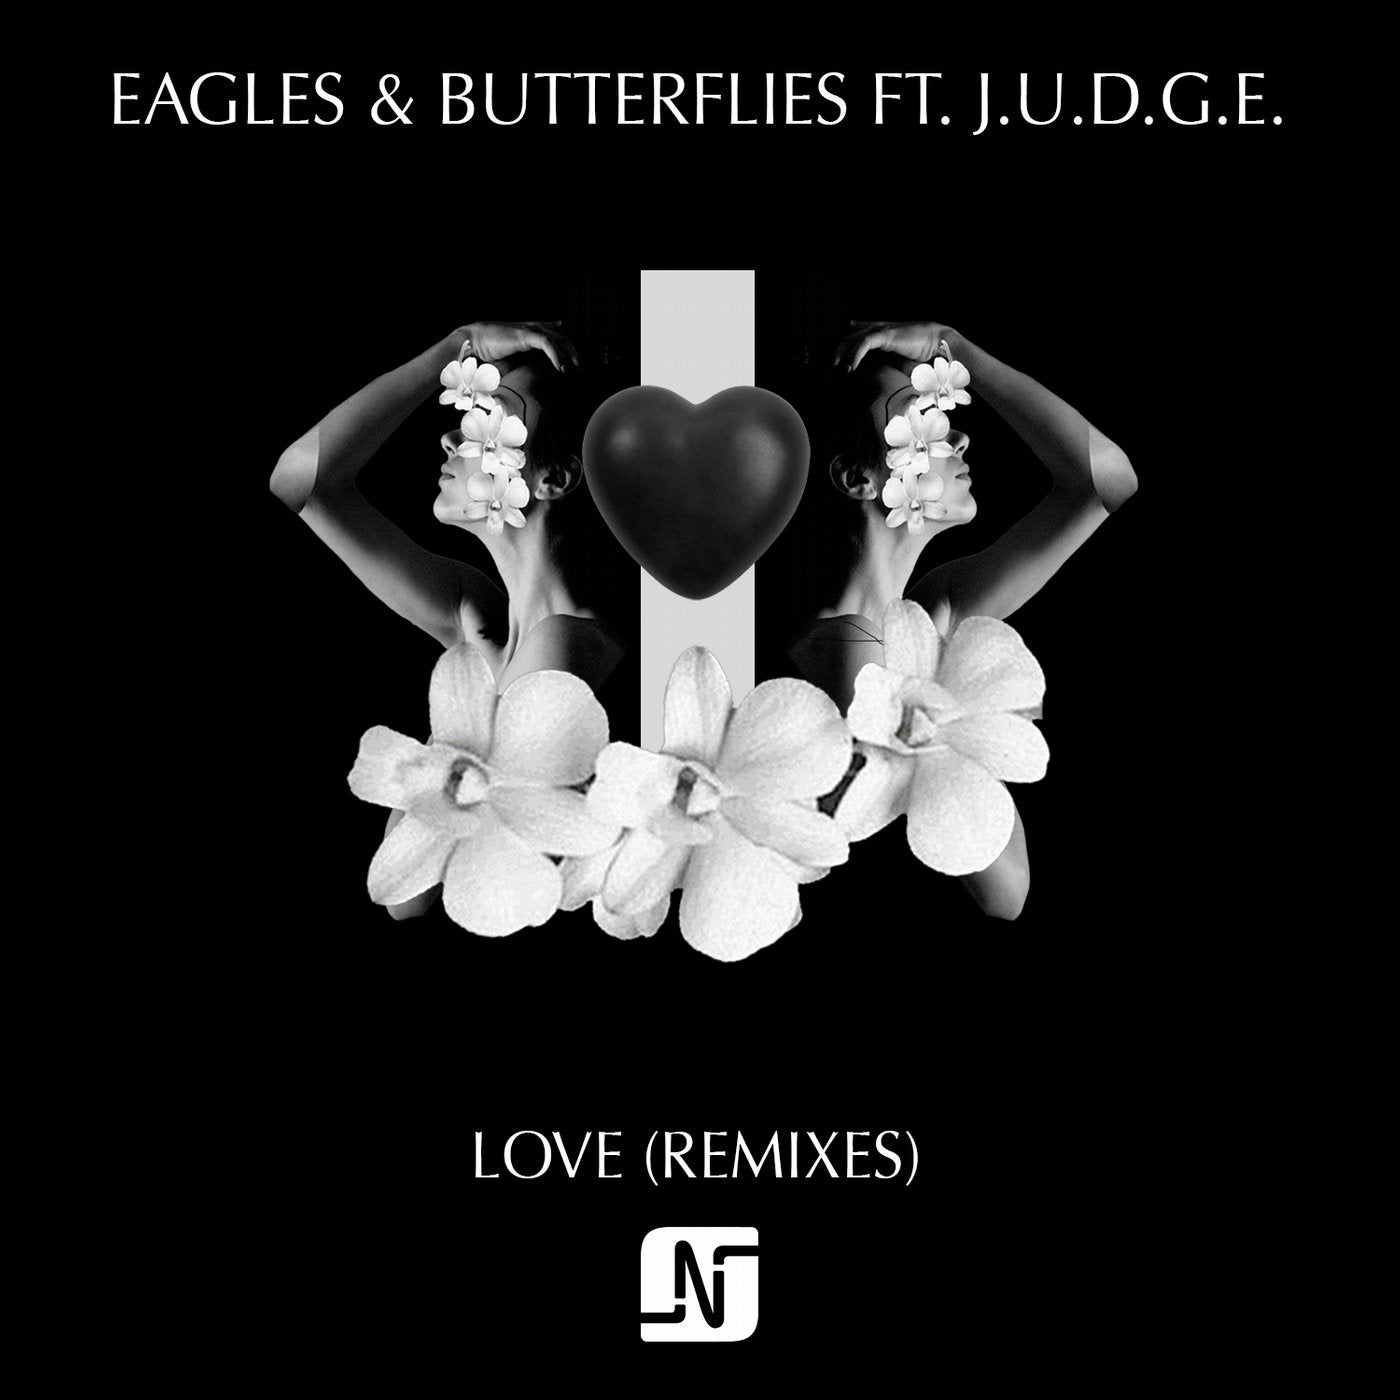 Слушать love remix. Eagles & Butterflies. J.U.D.G.E.. Lovely ремикс. Love Remix.